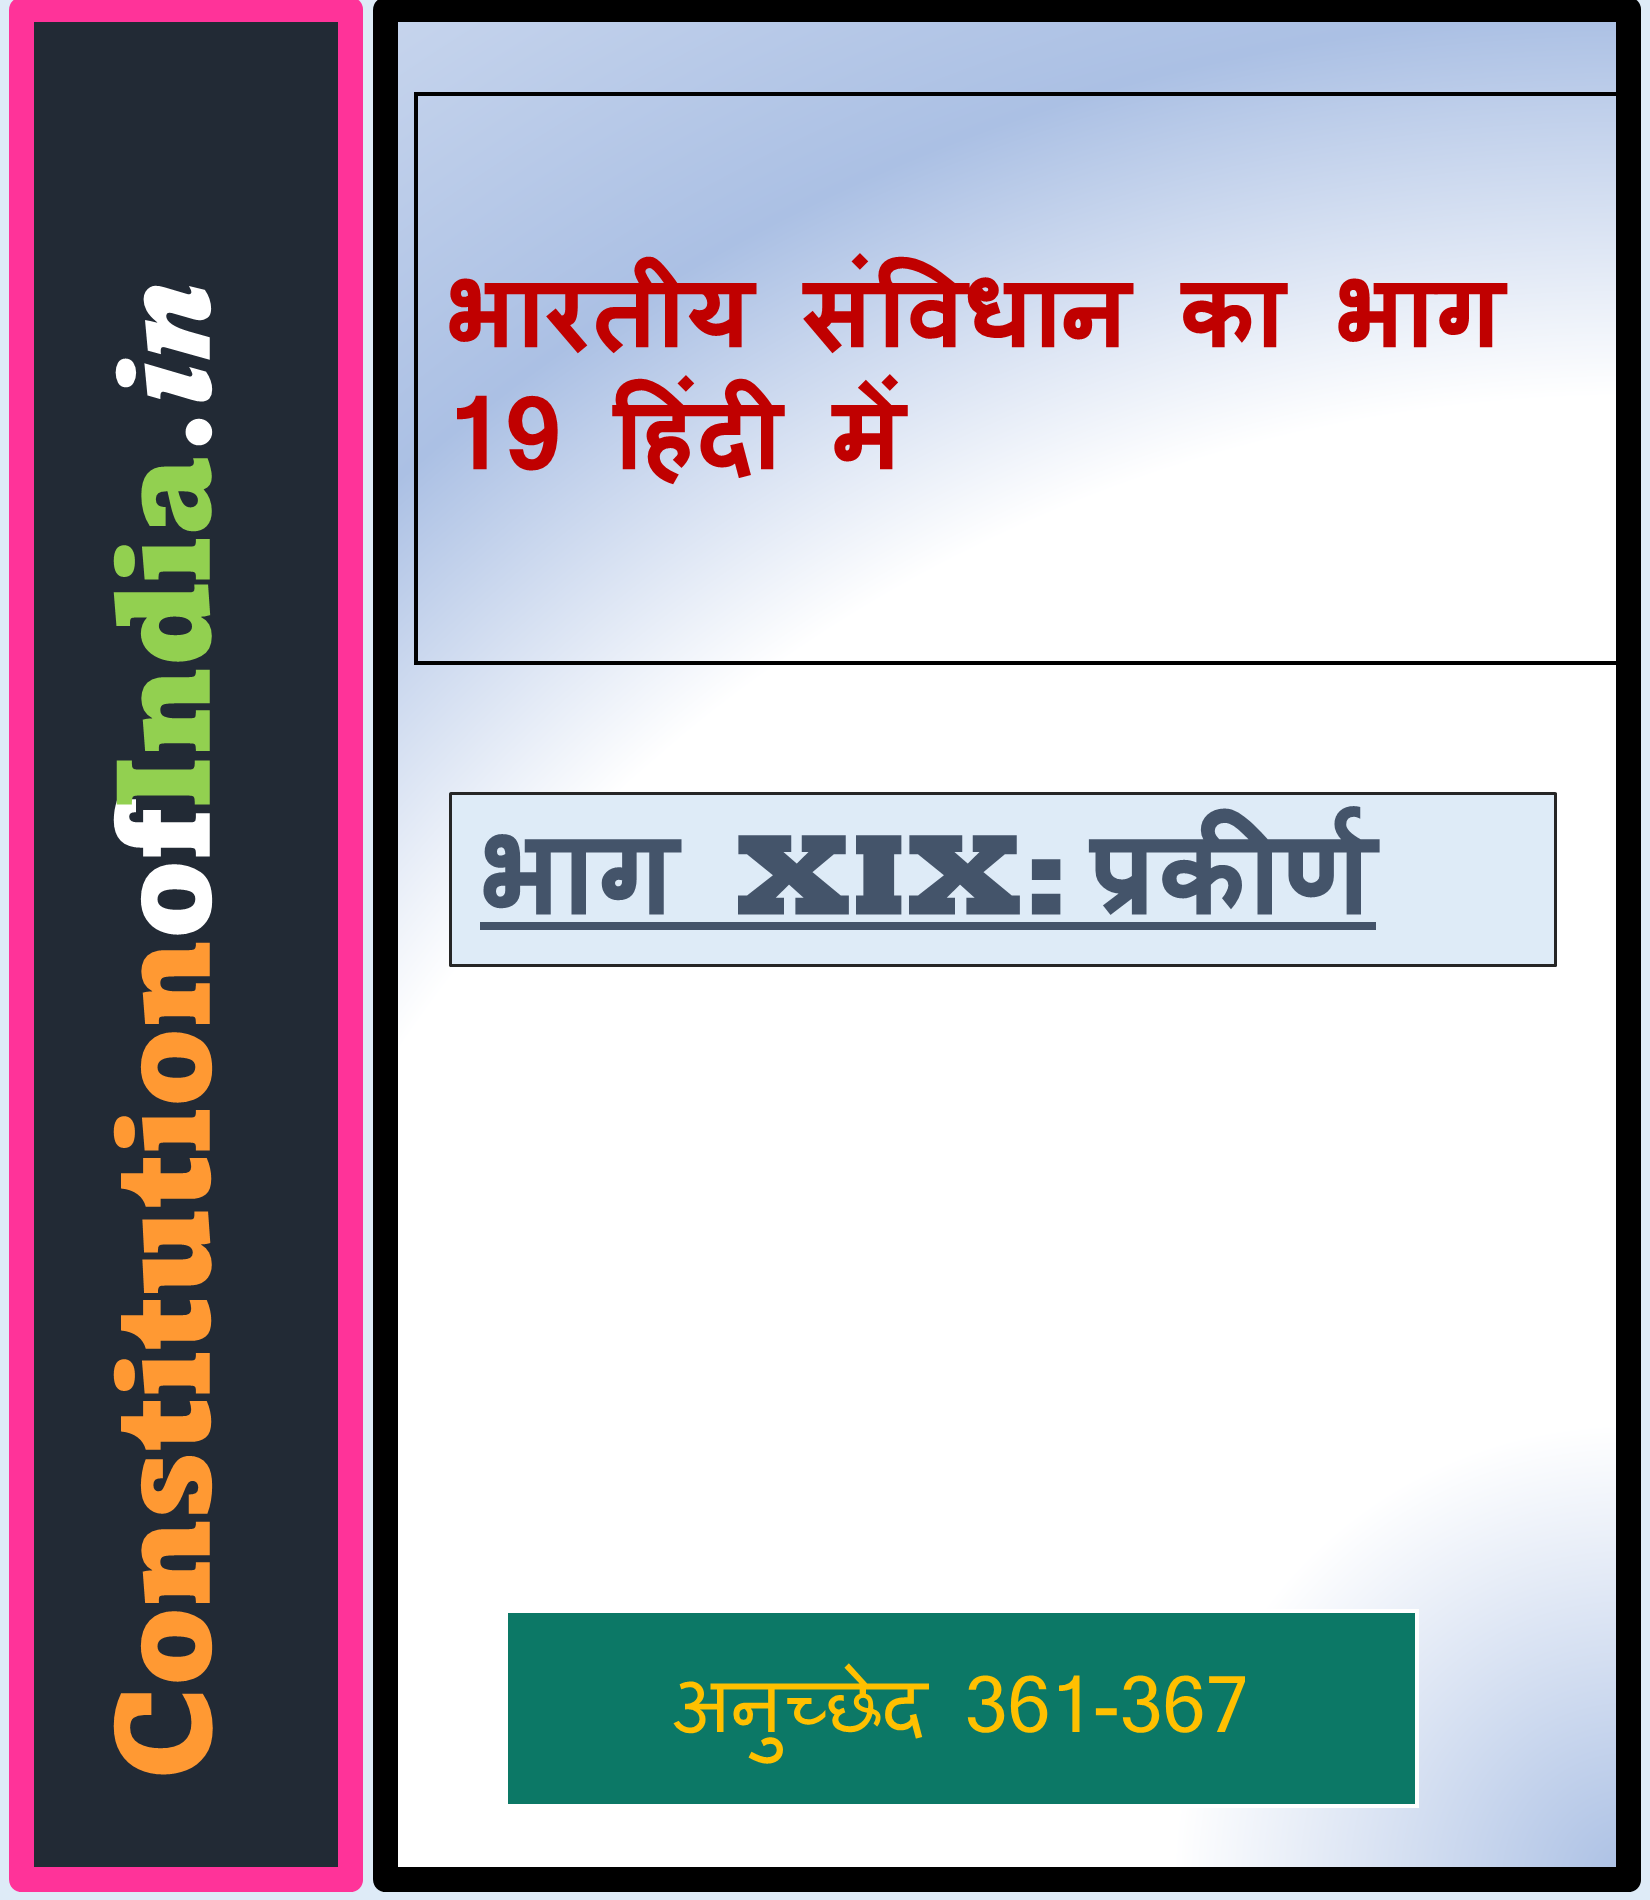 भारतीय संविधान का भाग 19 हिंदी में